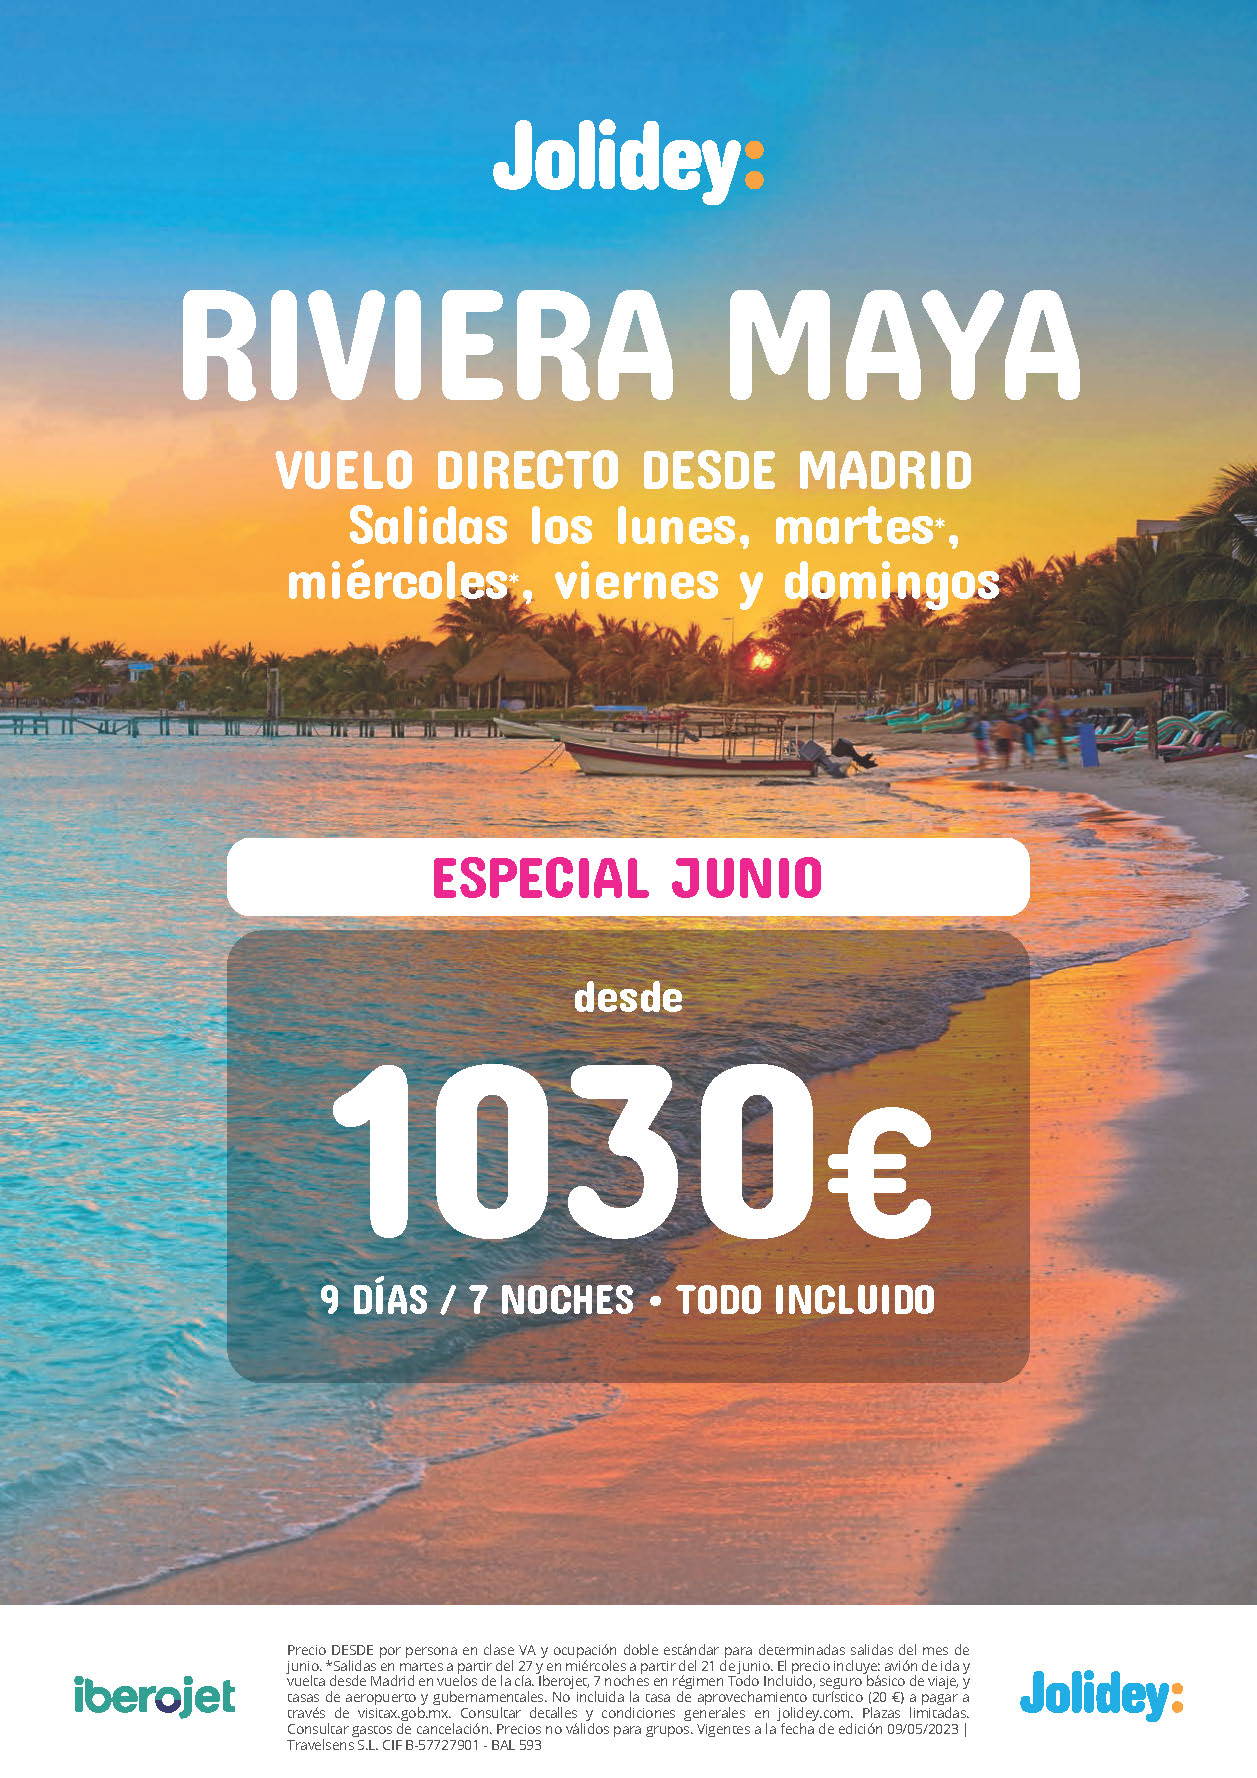 Oferta Jolidey Especial Junio 2023 Estancia en Riviera Maya Mexico 9 dias Todo Incluido salida en vuelo directo desde Madrid